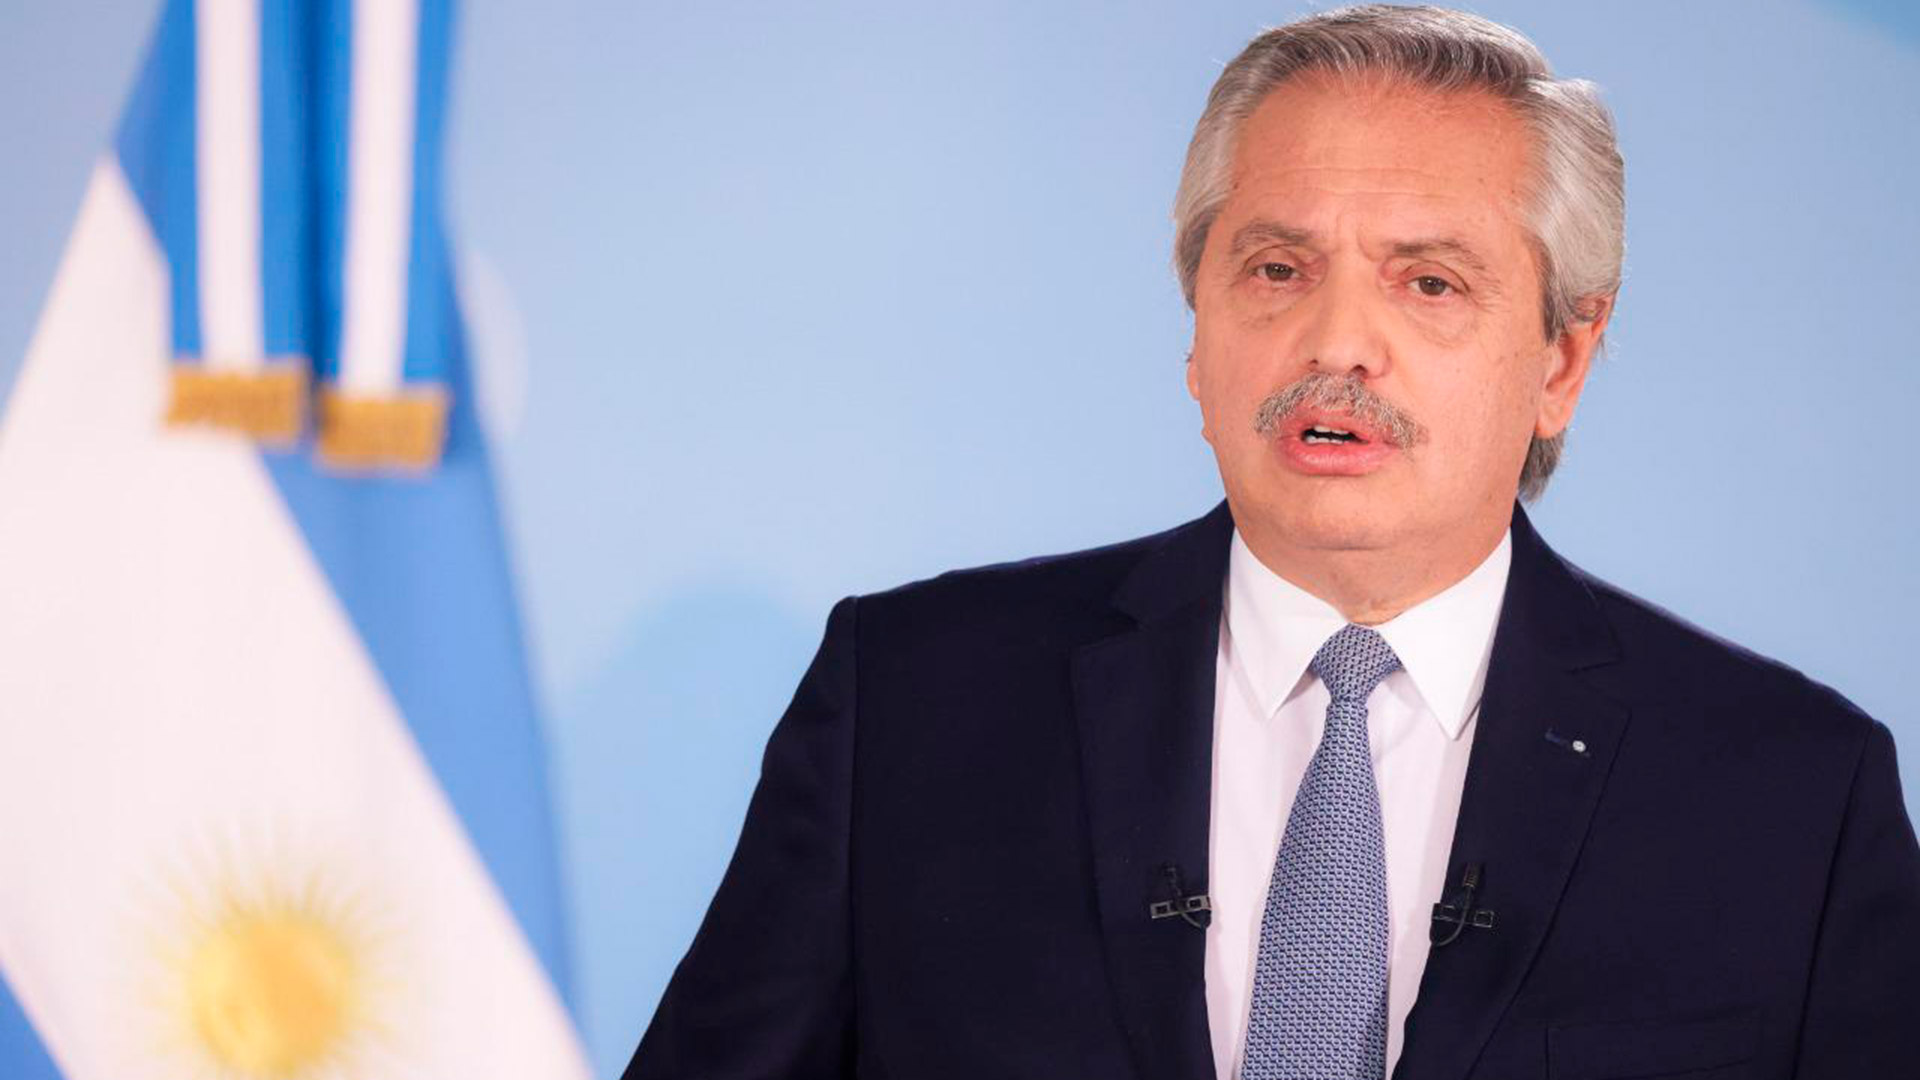 Las nuevas restricciones fueron anunciadas por el Presidente Alberto Fernández en cadena nacional